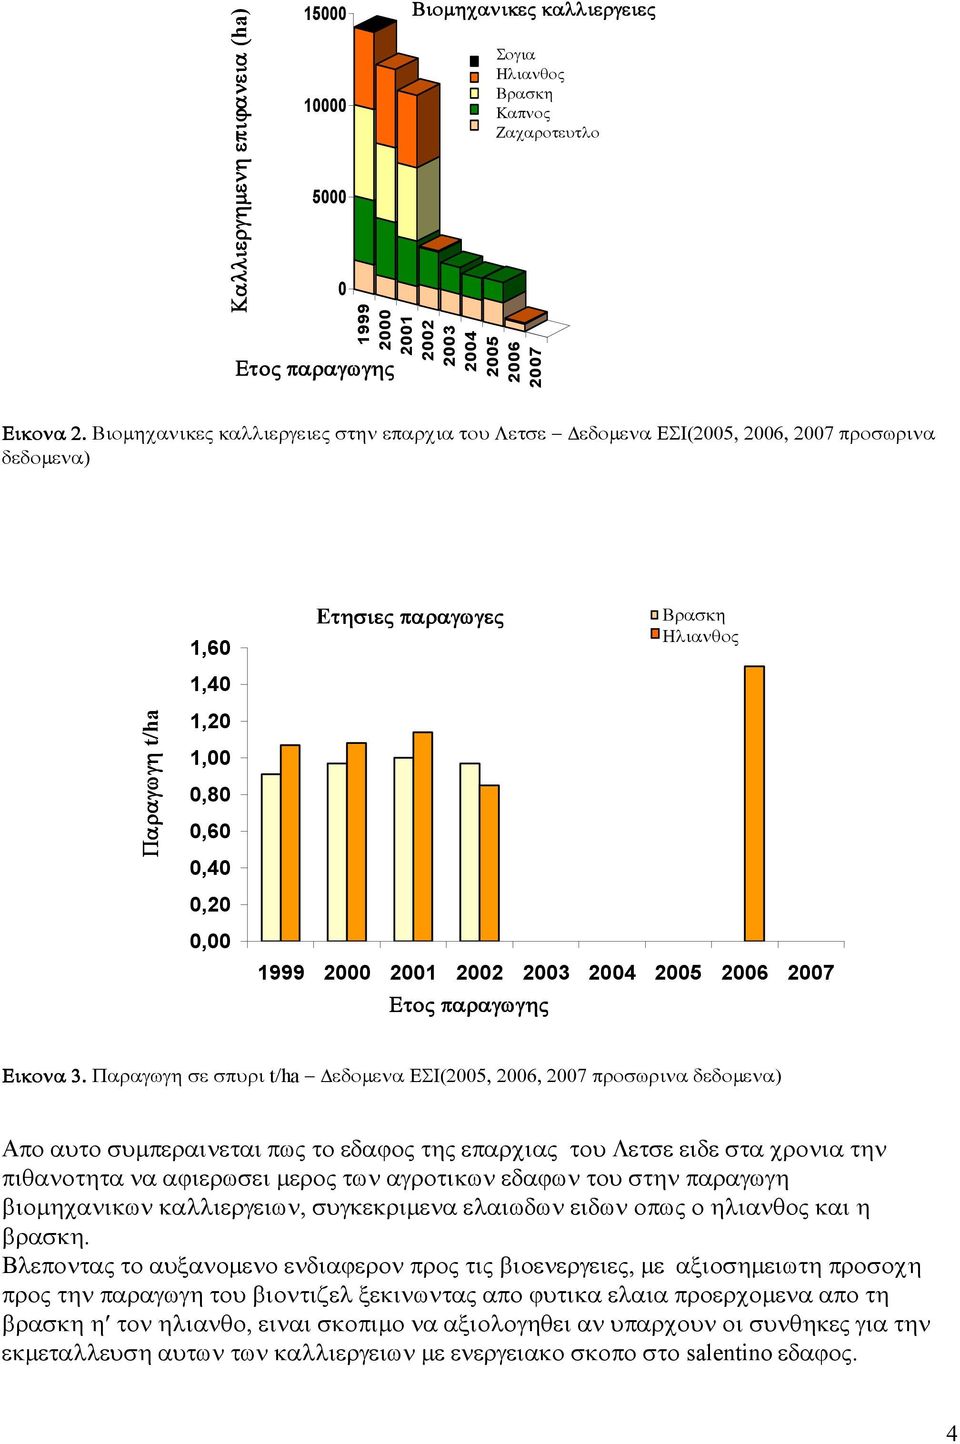 Βιοµηχανικες καλλιεργειες στην επαρχια του Λετσε εδοµενα ΕΣΙ(2005, 2006, 2007 προσωρινα δεδοµενα) Παραγωγη t/ha Produzione t/ha 1,60 1,40 1,20 1,00 0,80 0,60 0,40 0,20 0,00 Eτησιε Produzioni τησιες